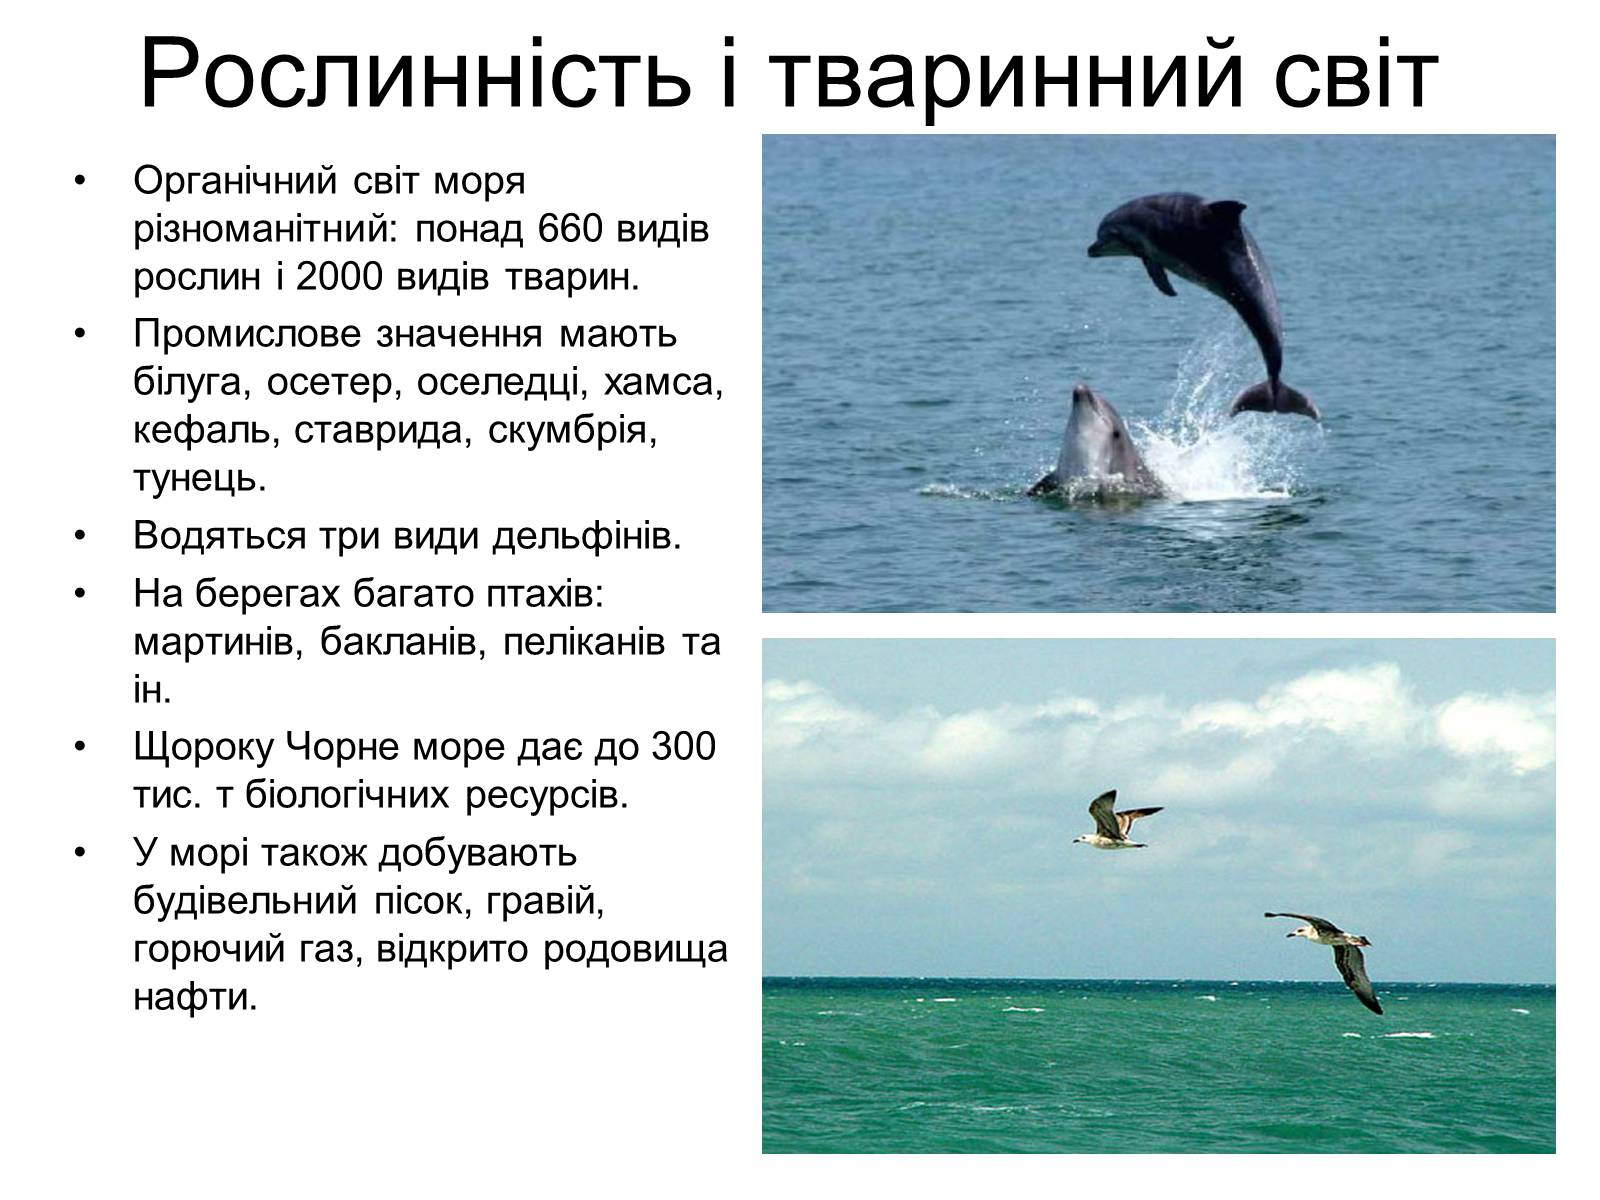 Тваринний та рослинний світ чорного моря